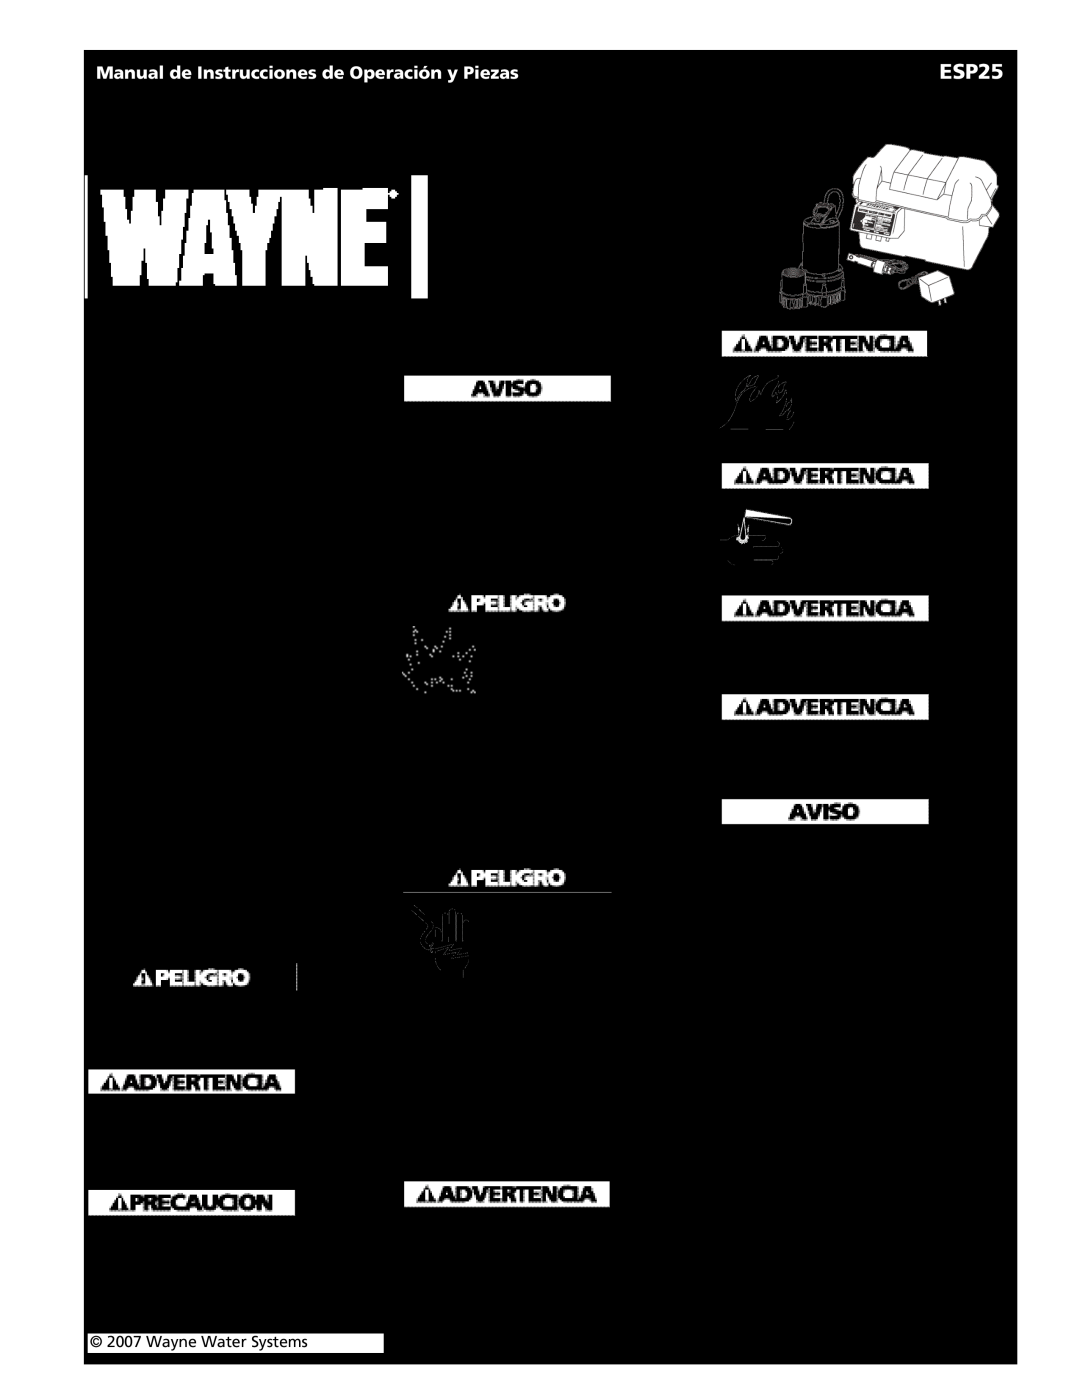 Wayne 352205-001 Bomba de respaldo para sumideros, Descripción, Medidas de Seguridad, Informaciones Generales de Seguridad 